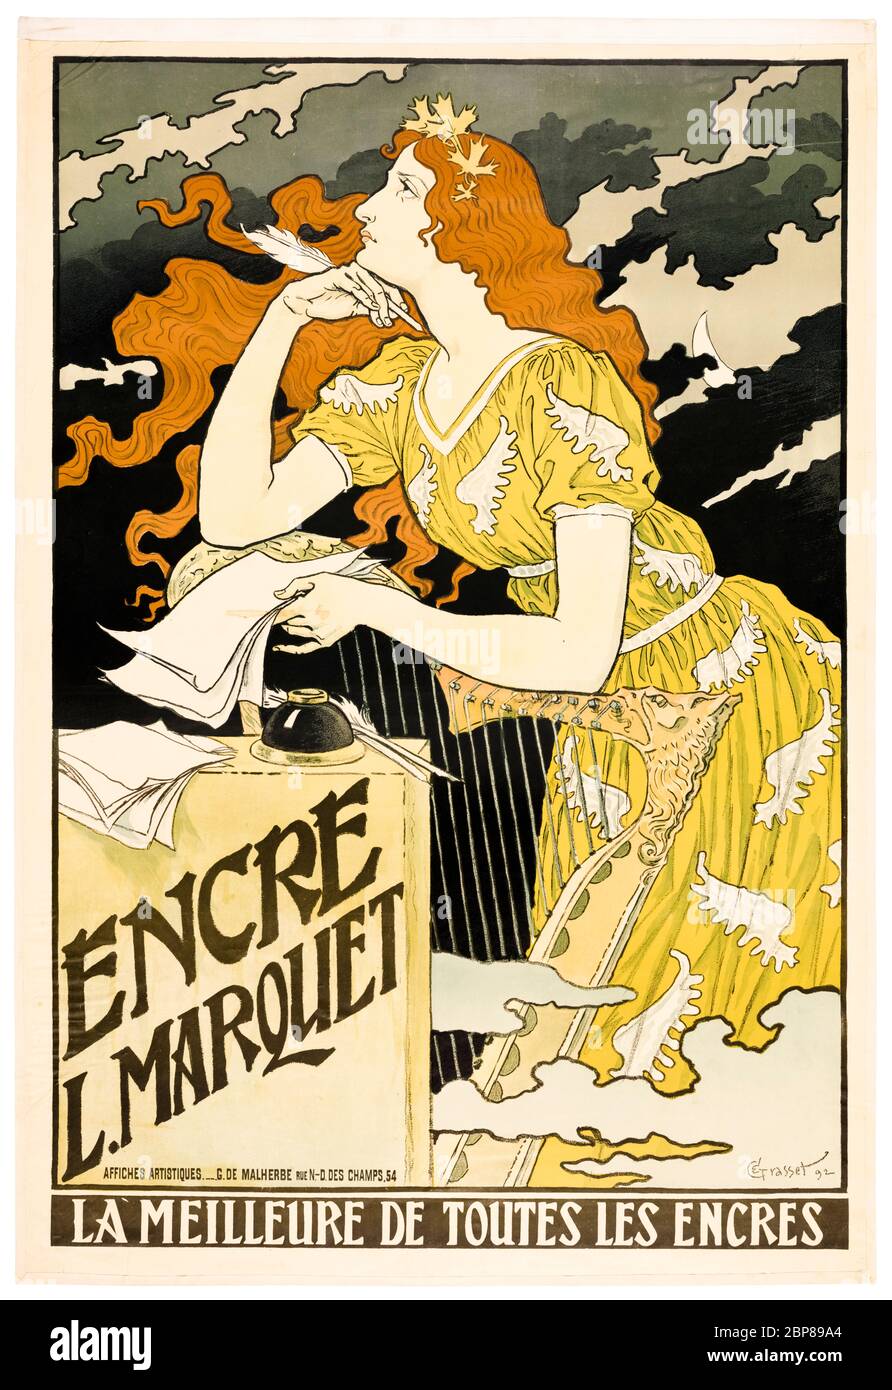 Eugène Grasset, Encre L. Marquet, Art Nouveau poster, 1892 Stock Photo